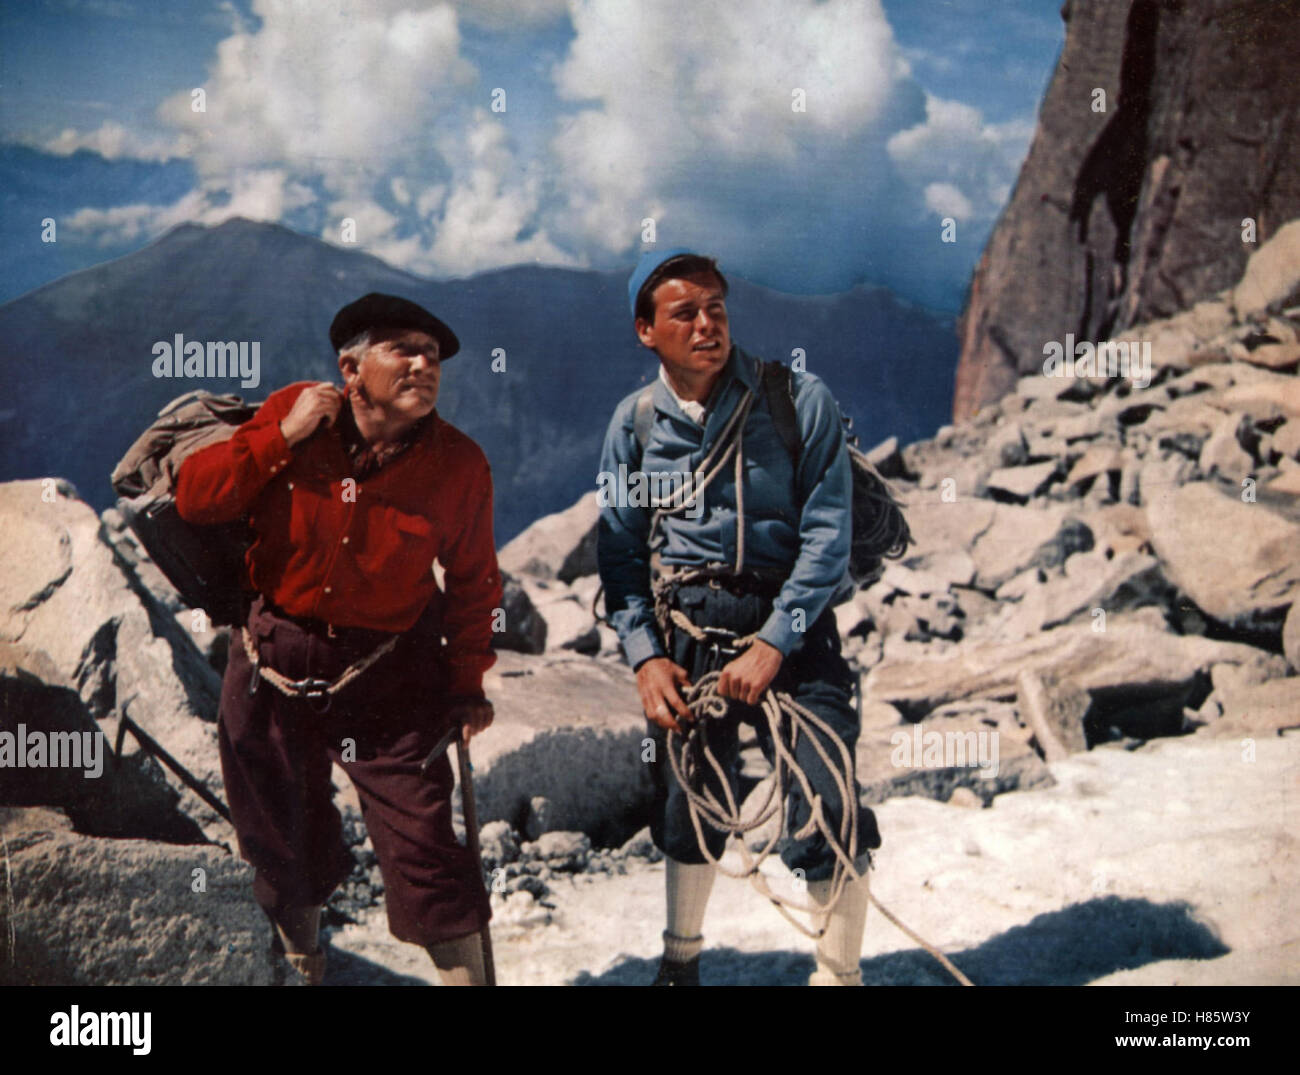 Der Berg der Versuchung, (LA MONTAGNA) USA 1956, Regie: Edward Dmytryk, Spencer Tracy, ROBERT WAGNER, Stichwort: Bergsteiger Foto Stock